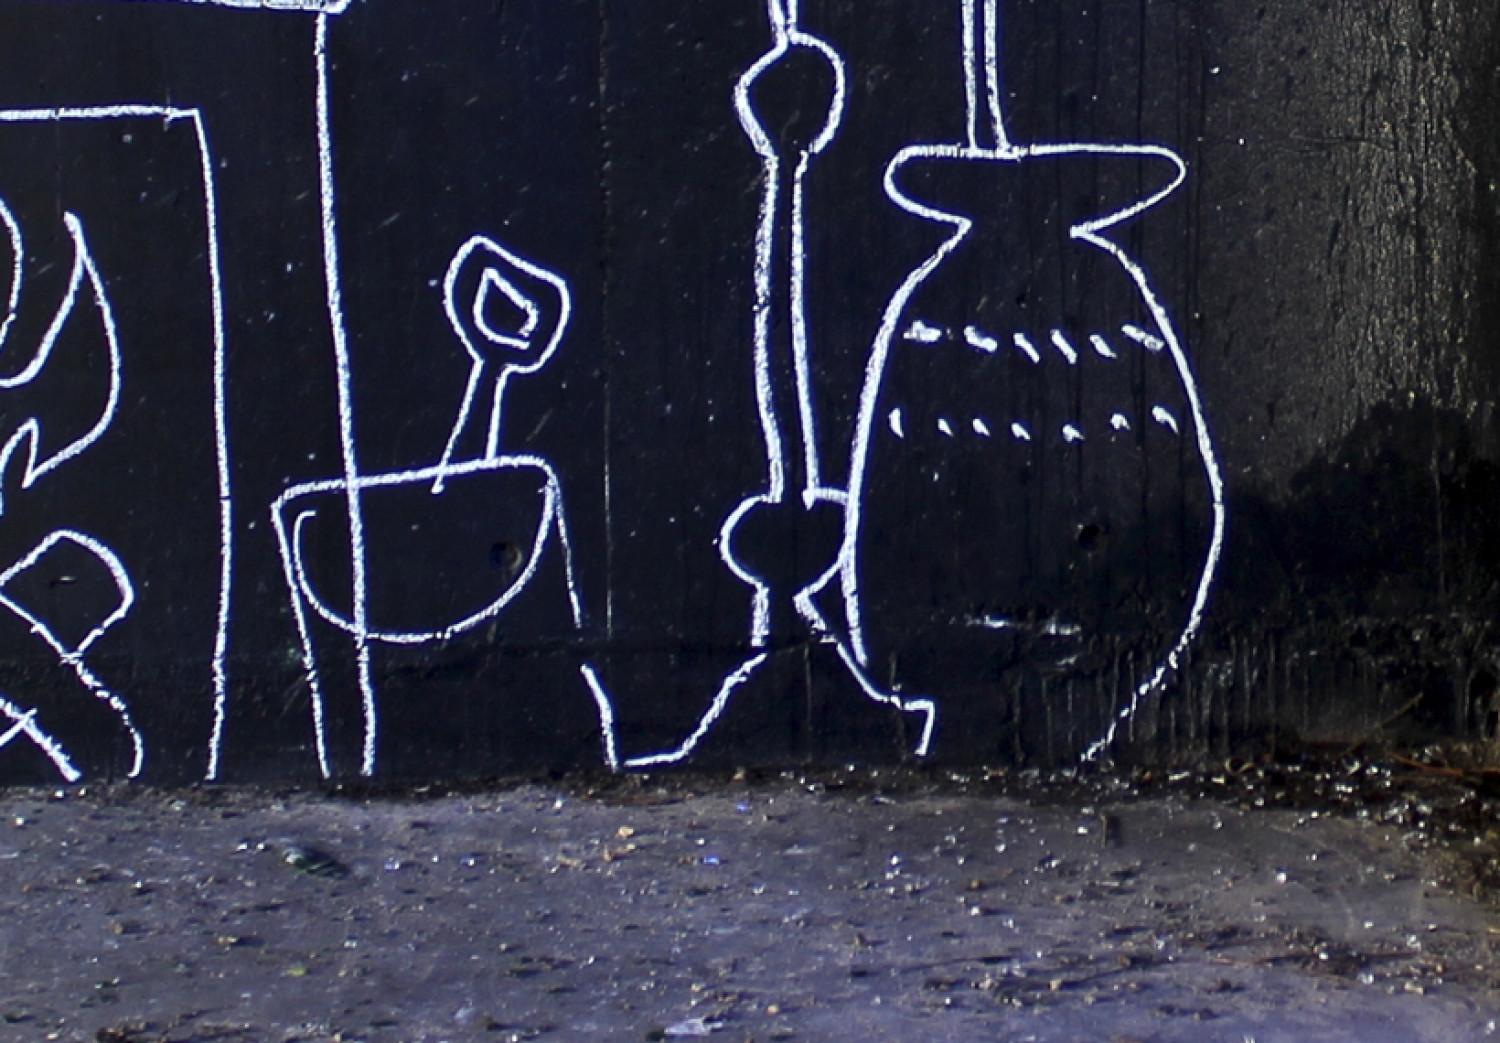 Cuadro Mi propio pedazo de suelo (Banksy)